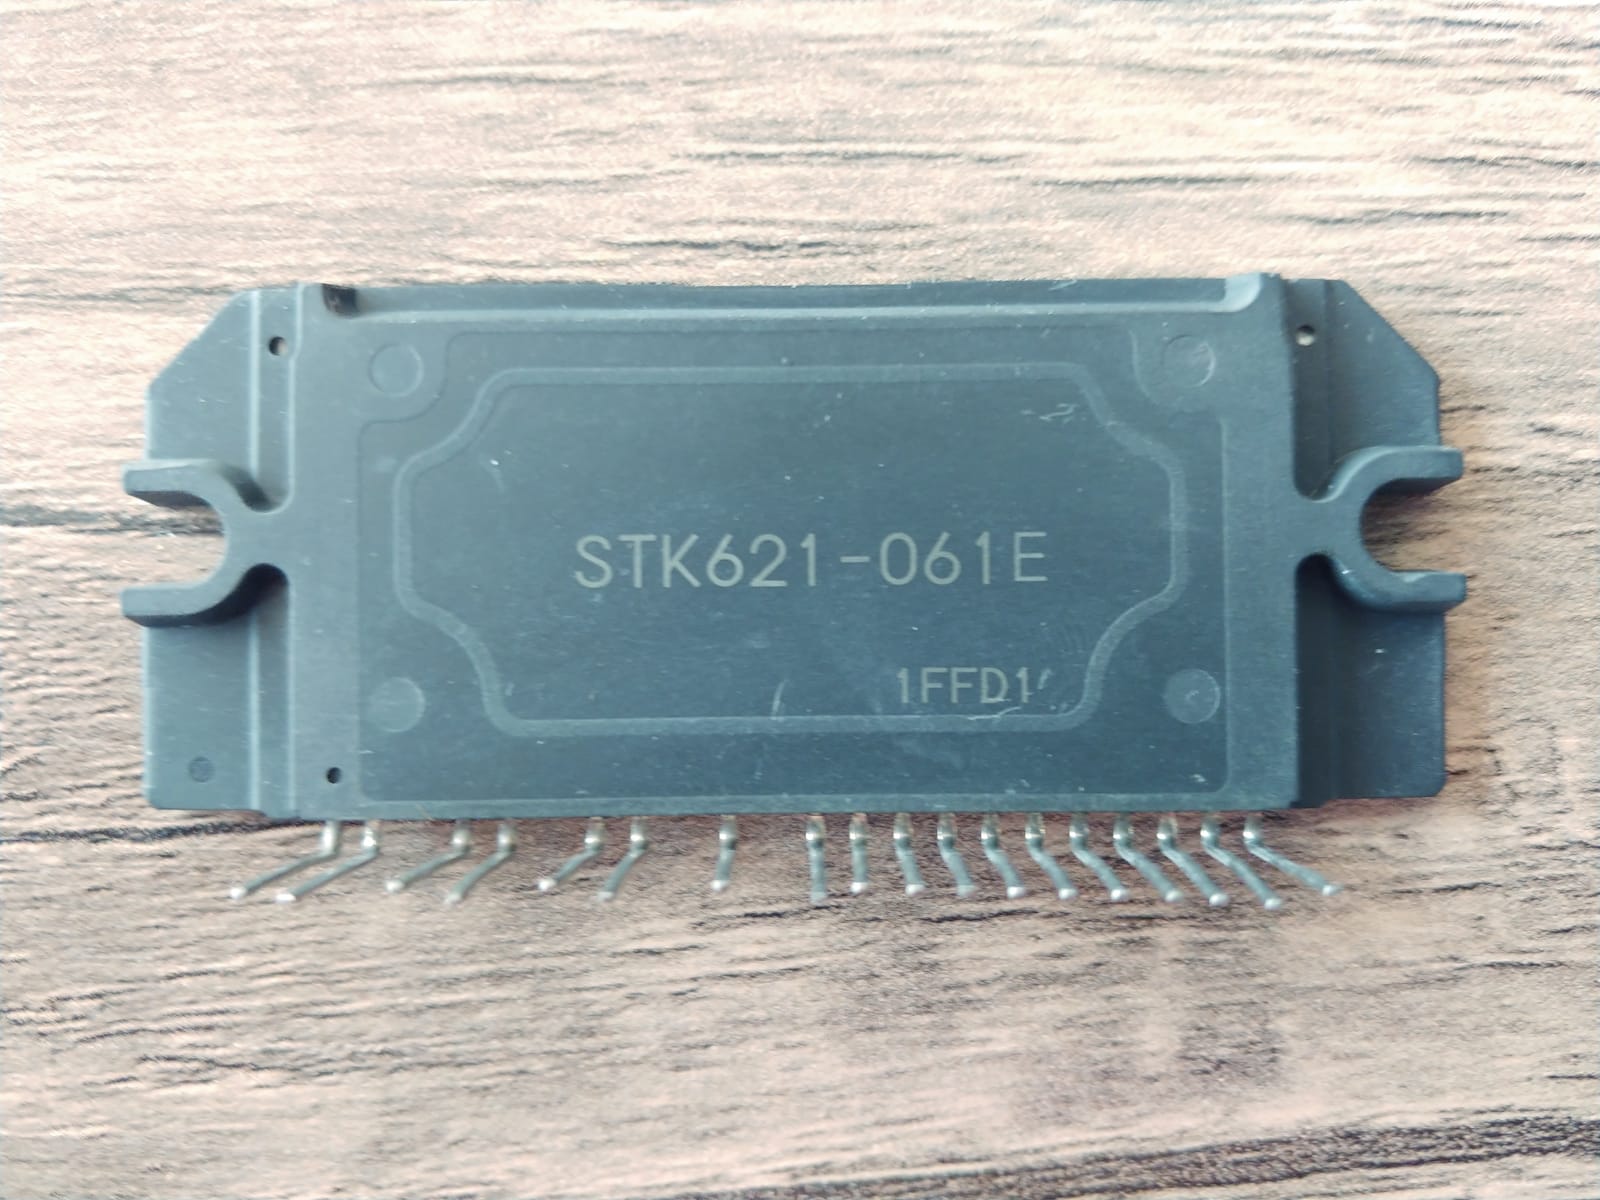 STK621-061E